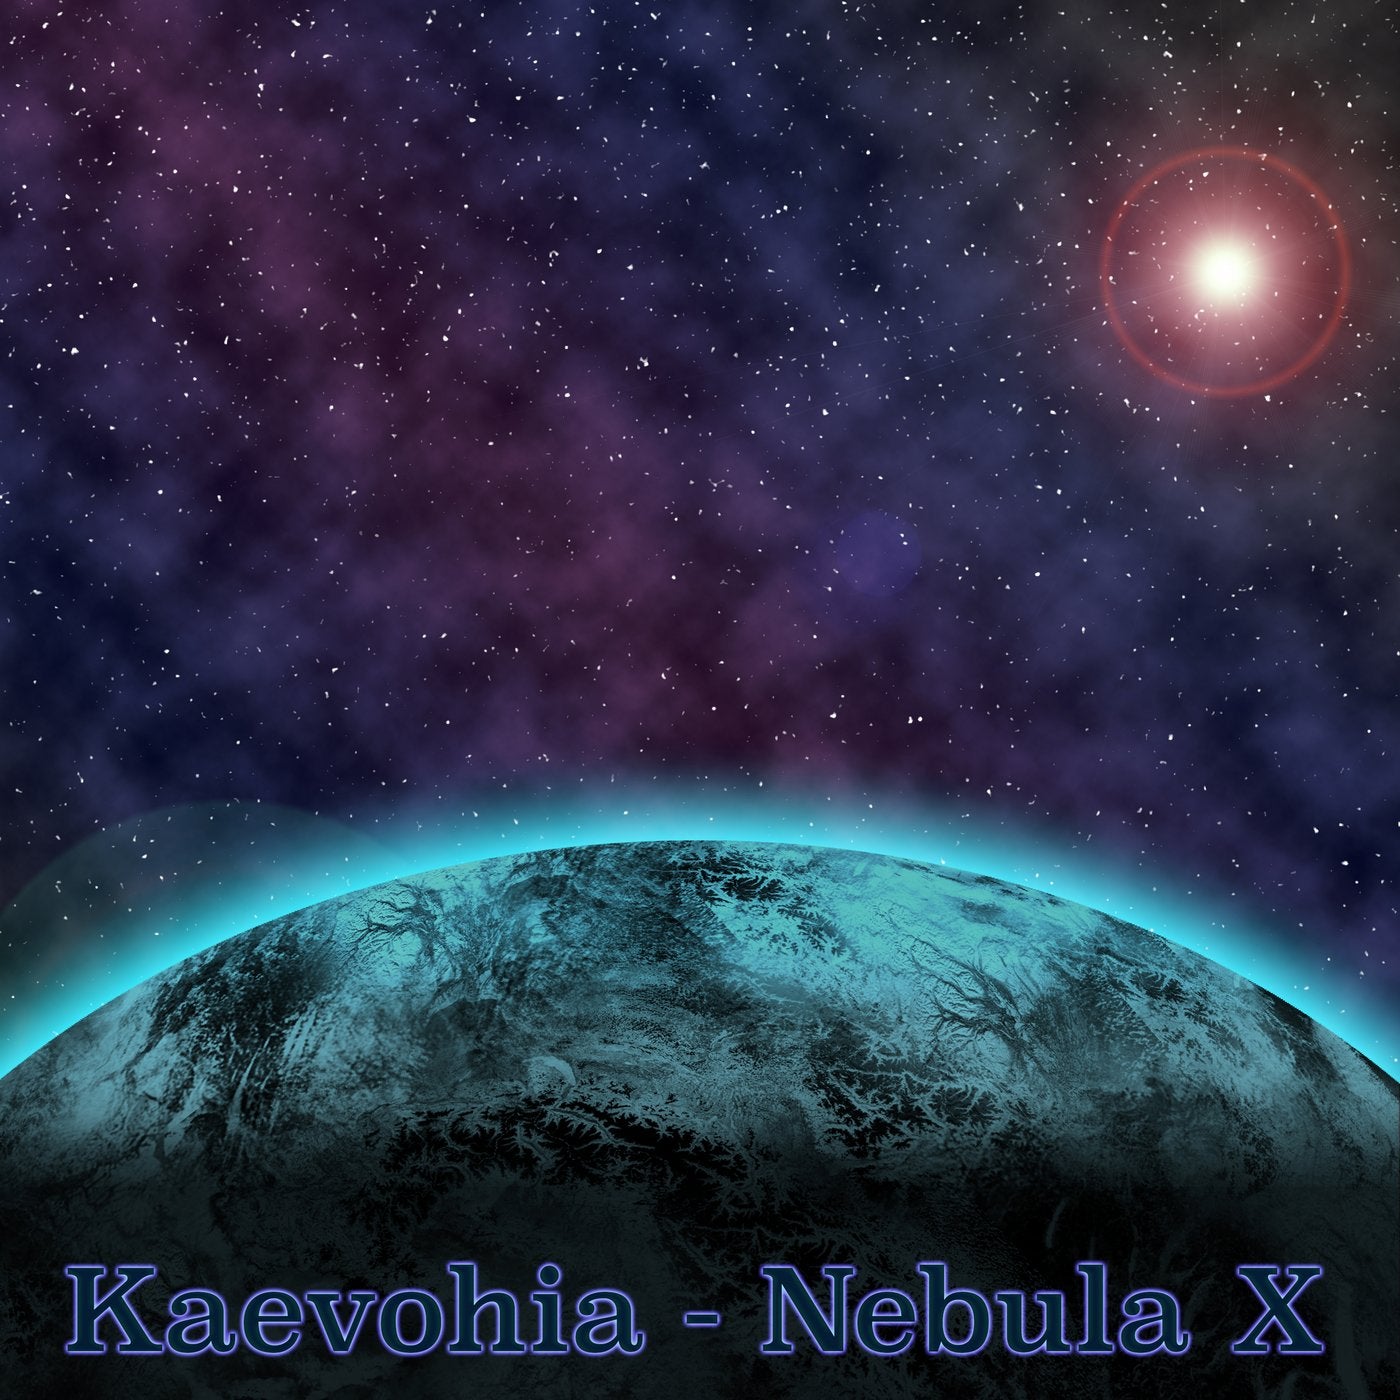 Nebula X